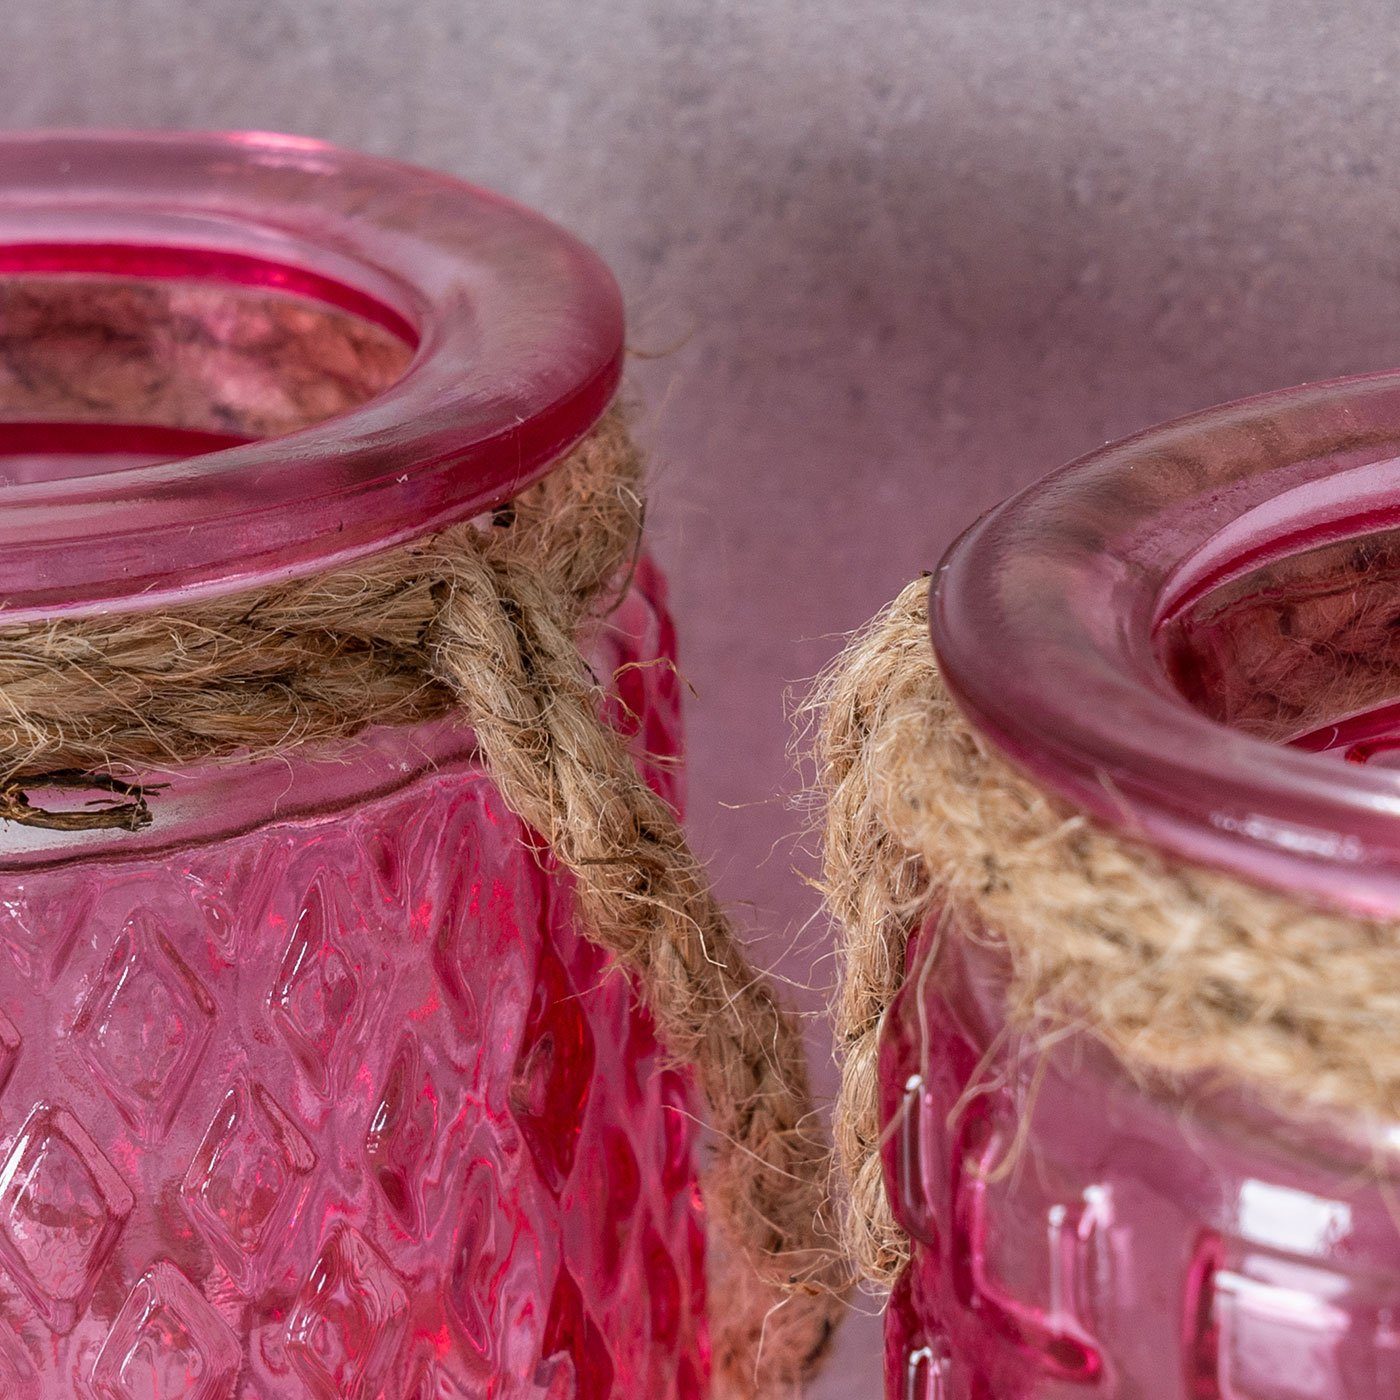 Levandeo® Teelichthalter, H10cm Rosa Set Teelichthalter Glas Windlicht Pink 4er Tischdeko